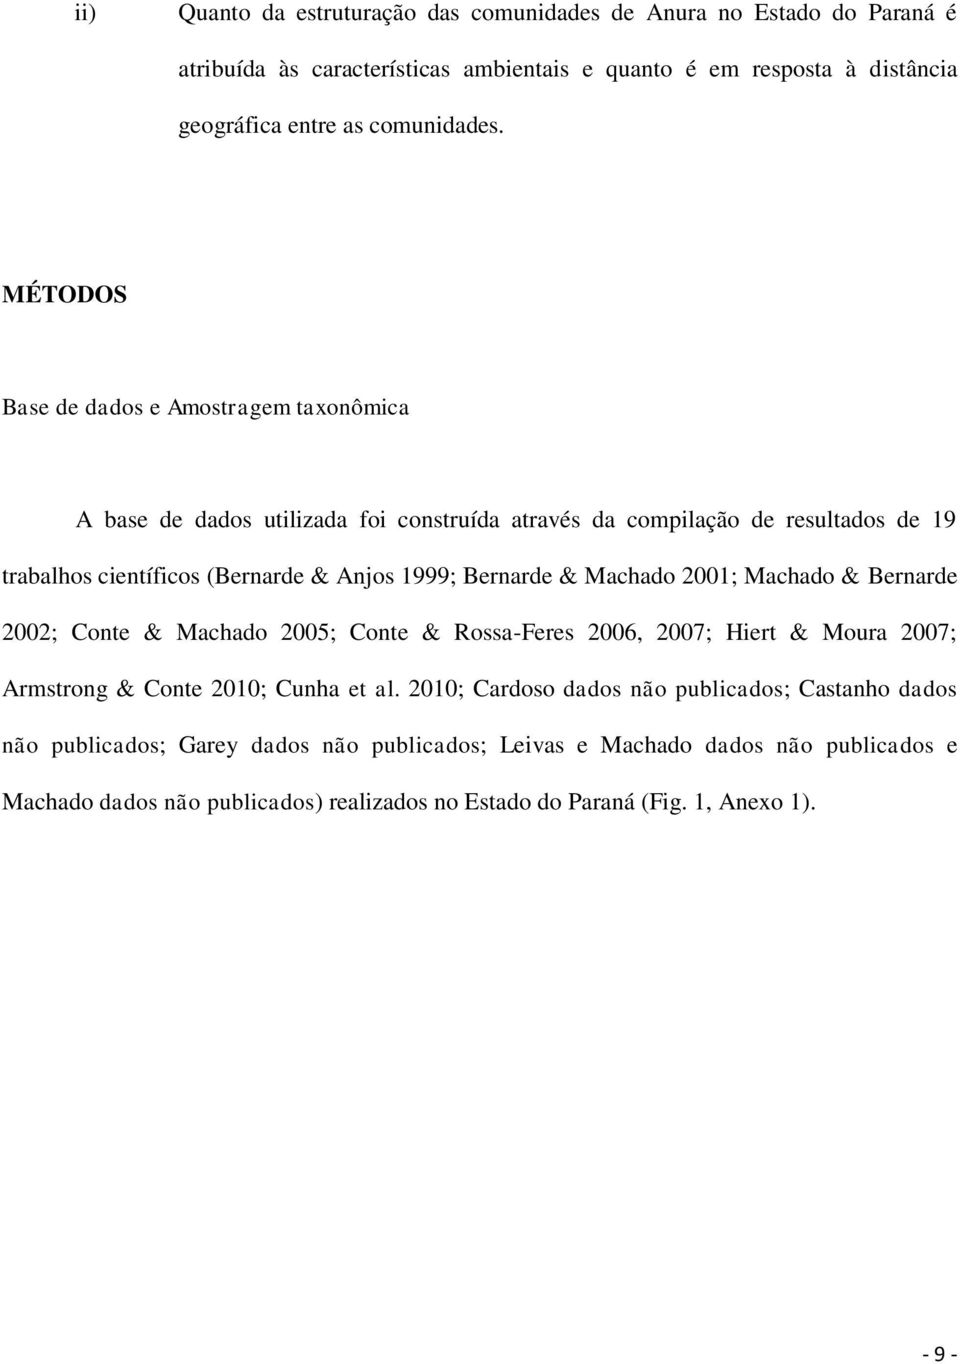 & Machado 2001; Machado & Bernarde 2002; Conte & Machado 2005; Conte & Rossa-Feres 2006, 2007; Hiert & Moura 2007; Armstrong & Conte 2010; Cunha et al.